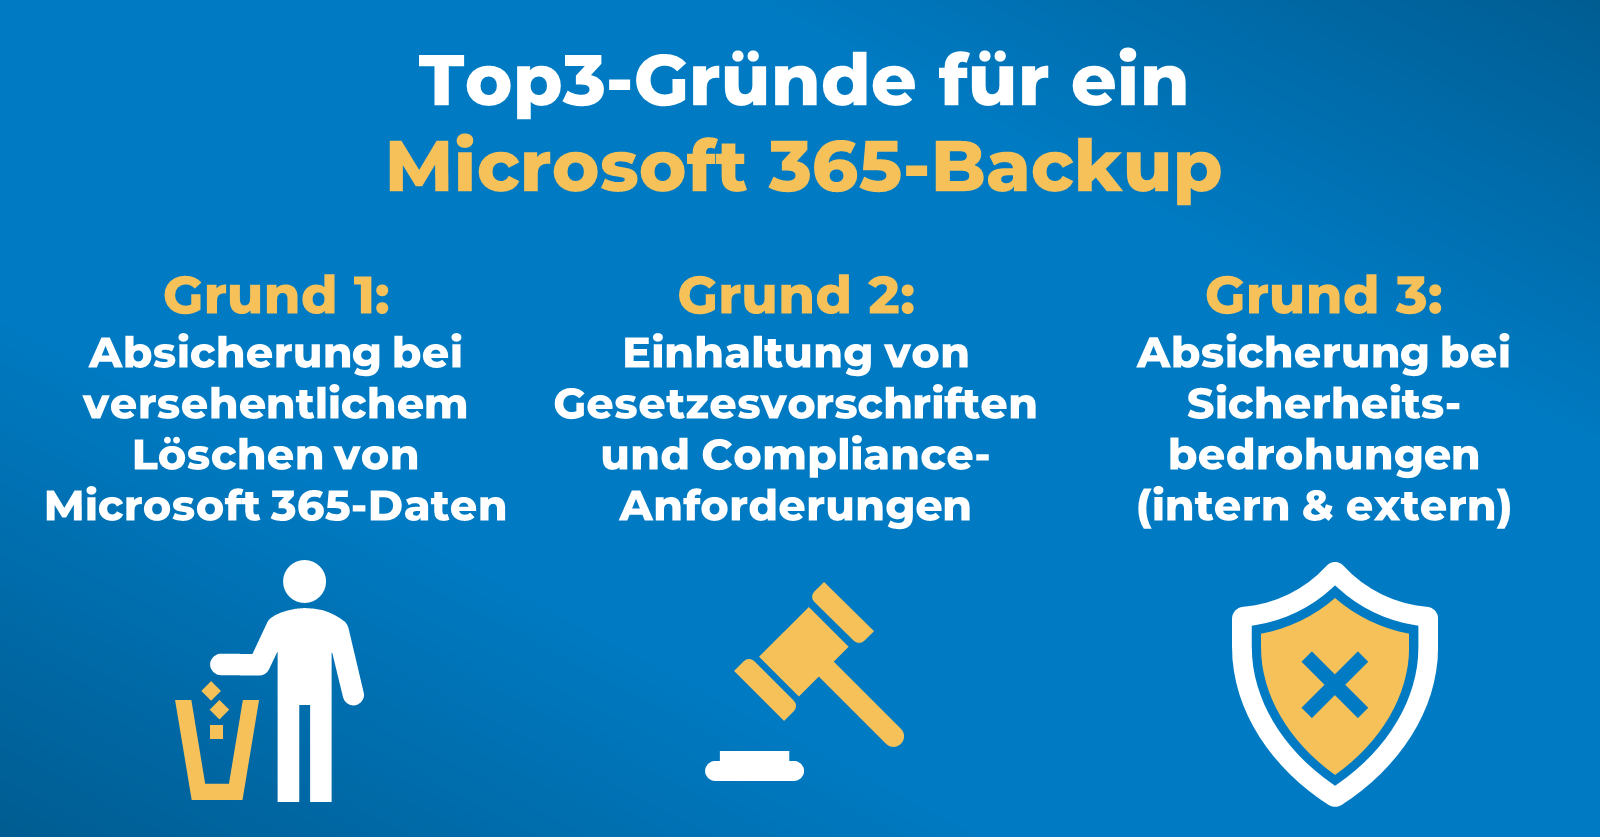 Top3-Gründe für Microsoft 365-Backup: Die Übersicht